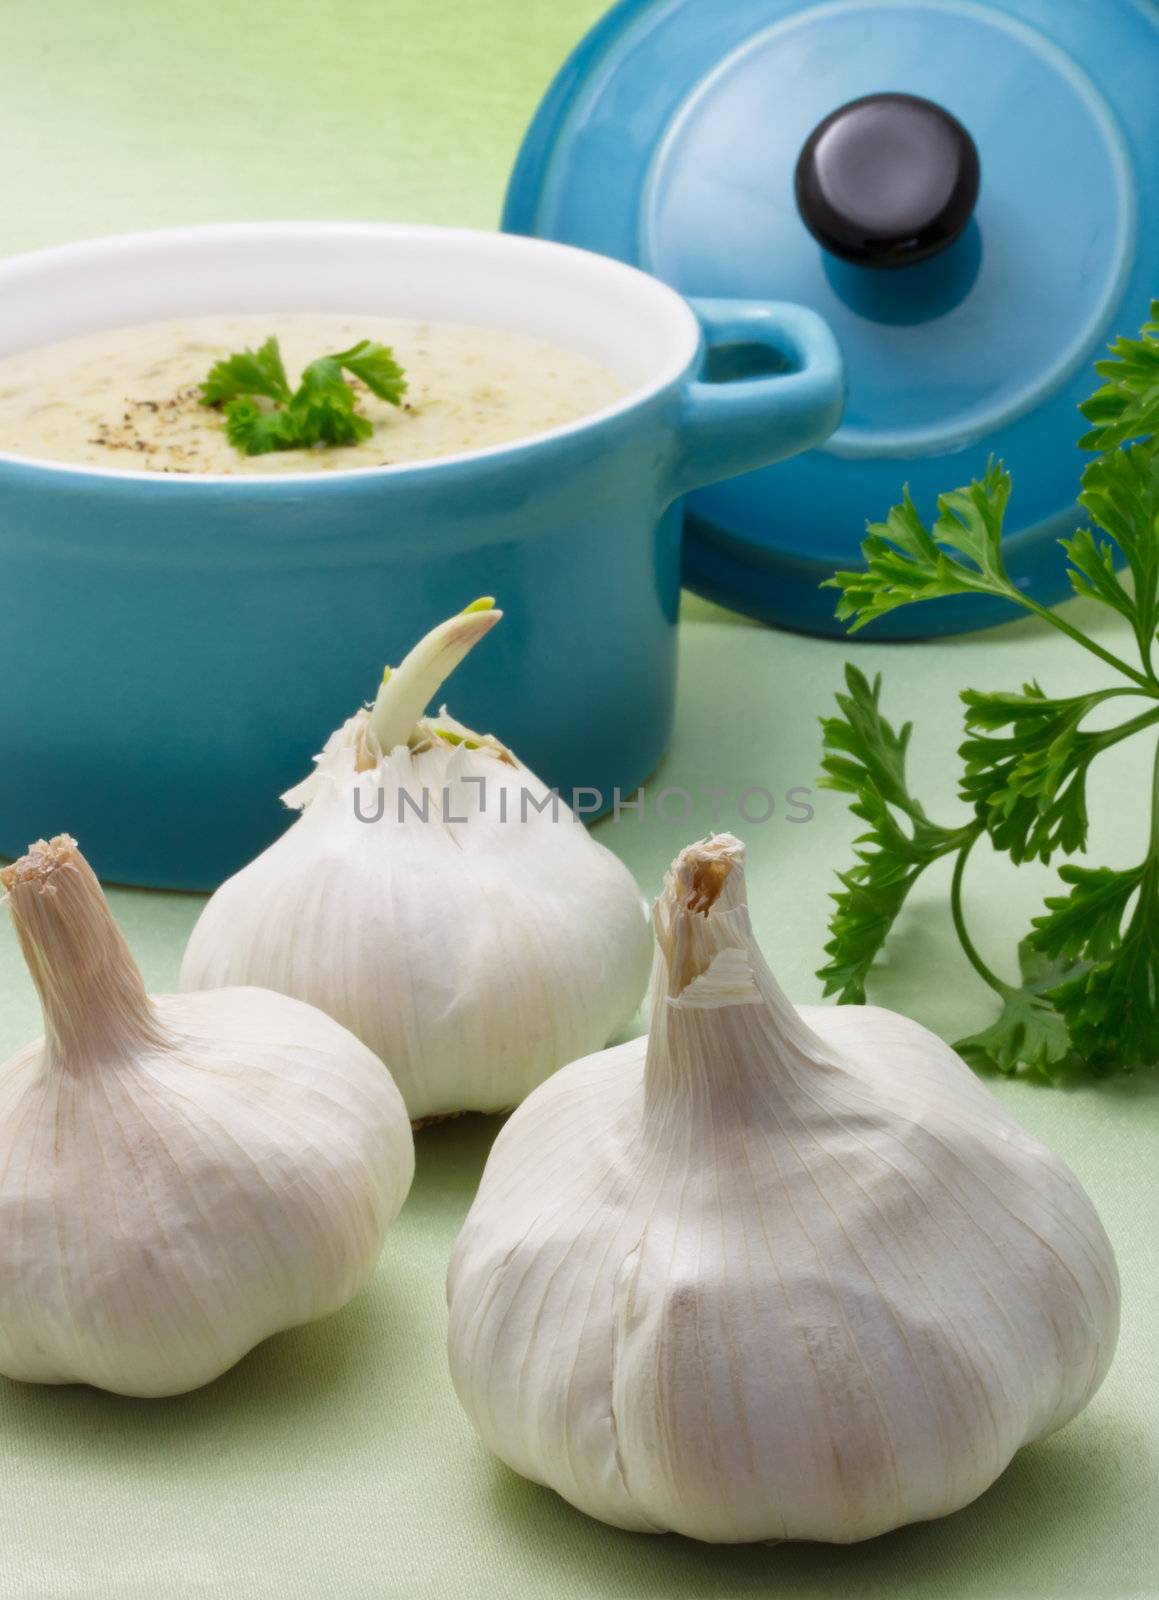 Garlic with creamy soup by melpomene